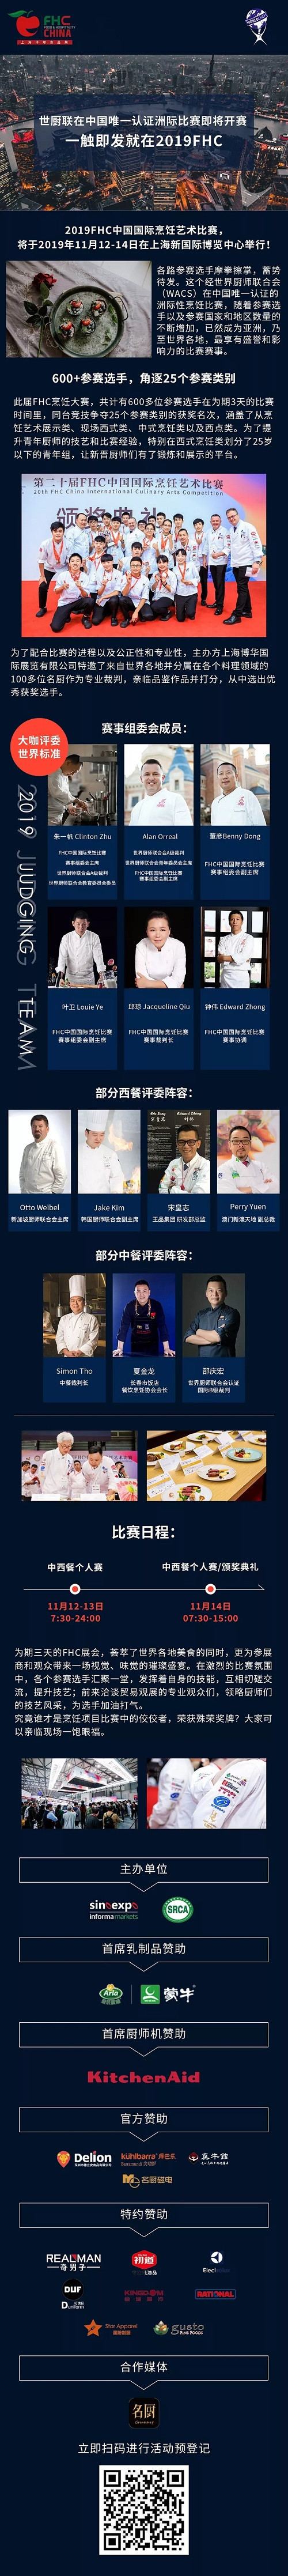 盛大来袭  世厨联在中国唯一认证洲际比赛即将开赛